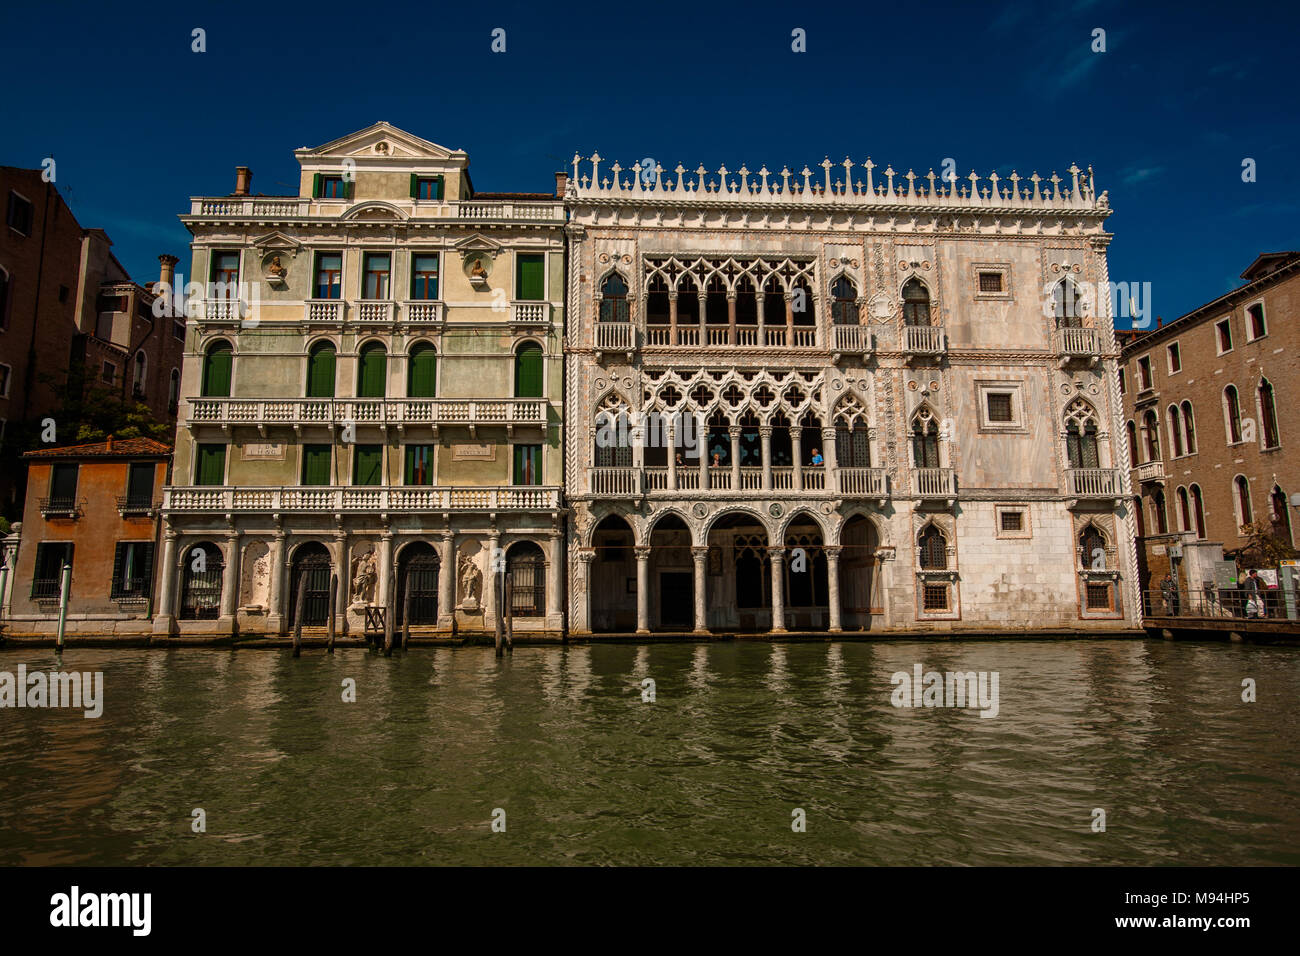 Die schöne Fassade des Schlosses von Santa Sofia, Ca d'Oro am Grand Canal in Venedig, Italien Stockfoto